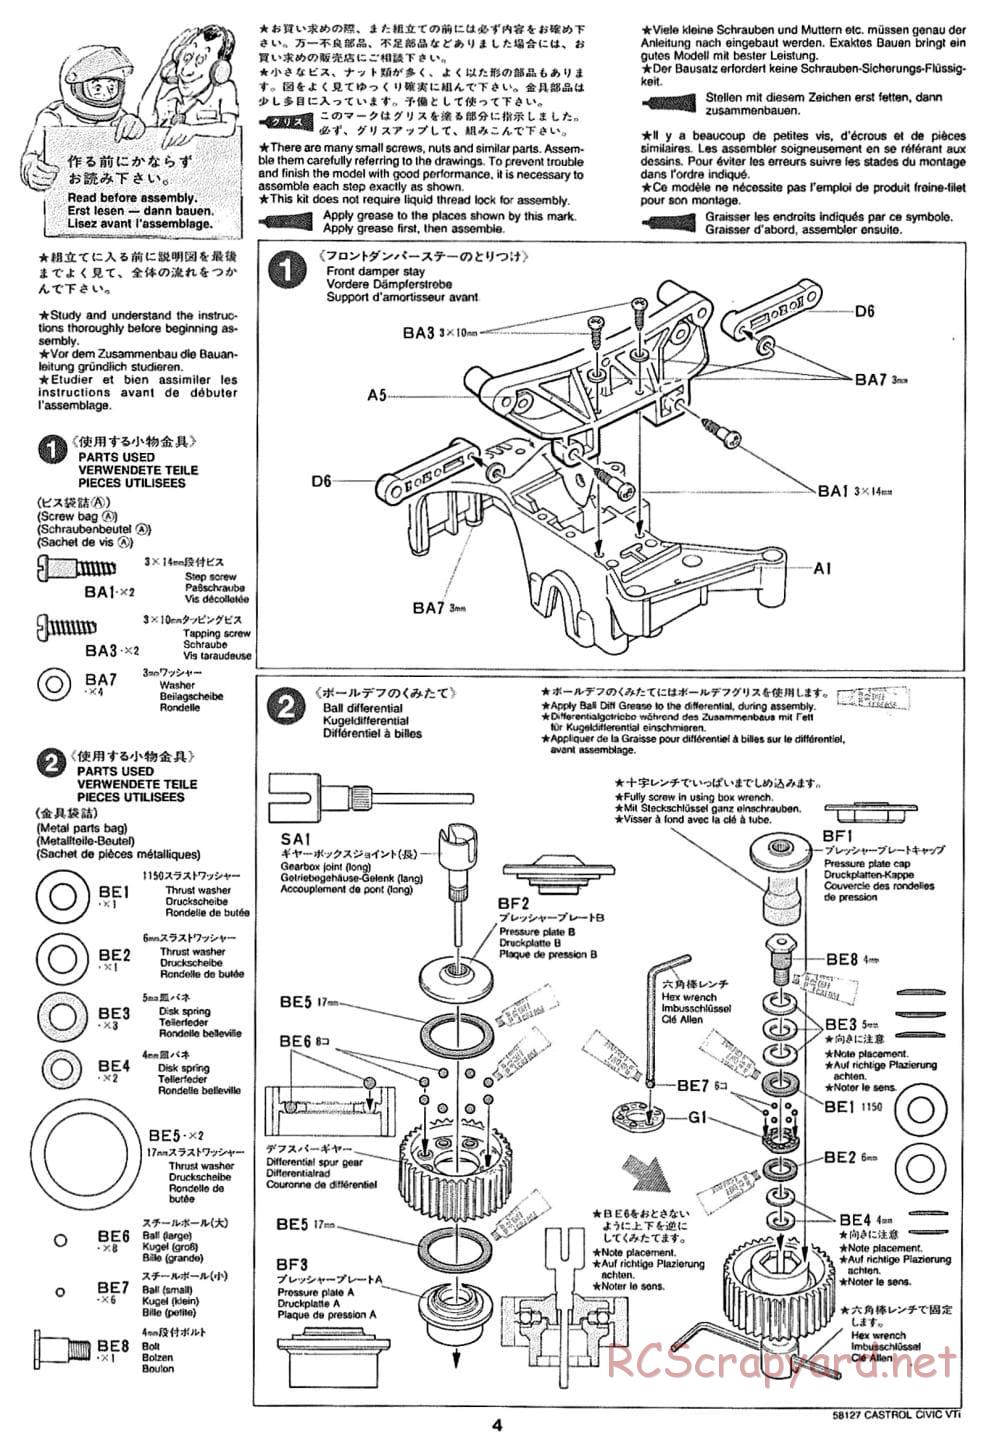 Tamiya - Castrol Honda Civic VTi - FF-01 Chassis - Manual - Page 4